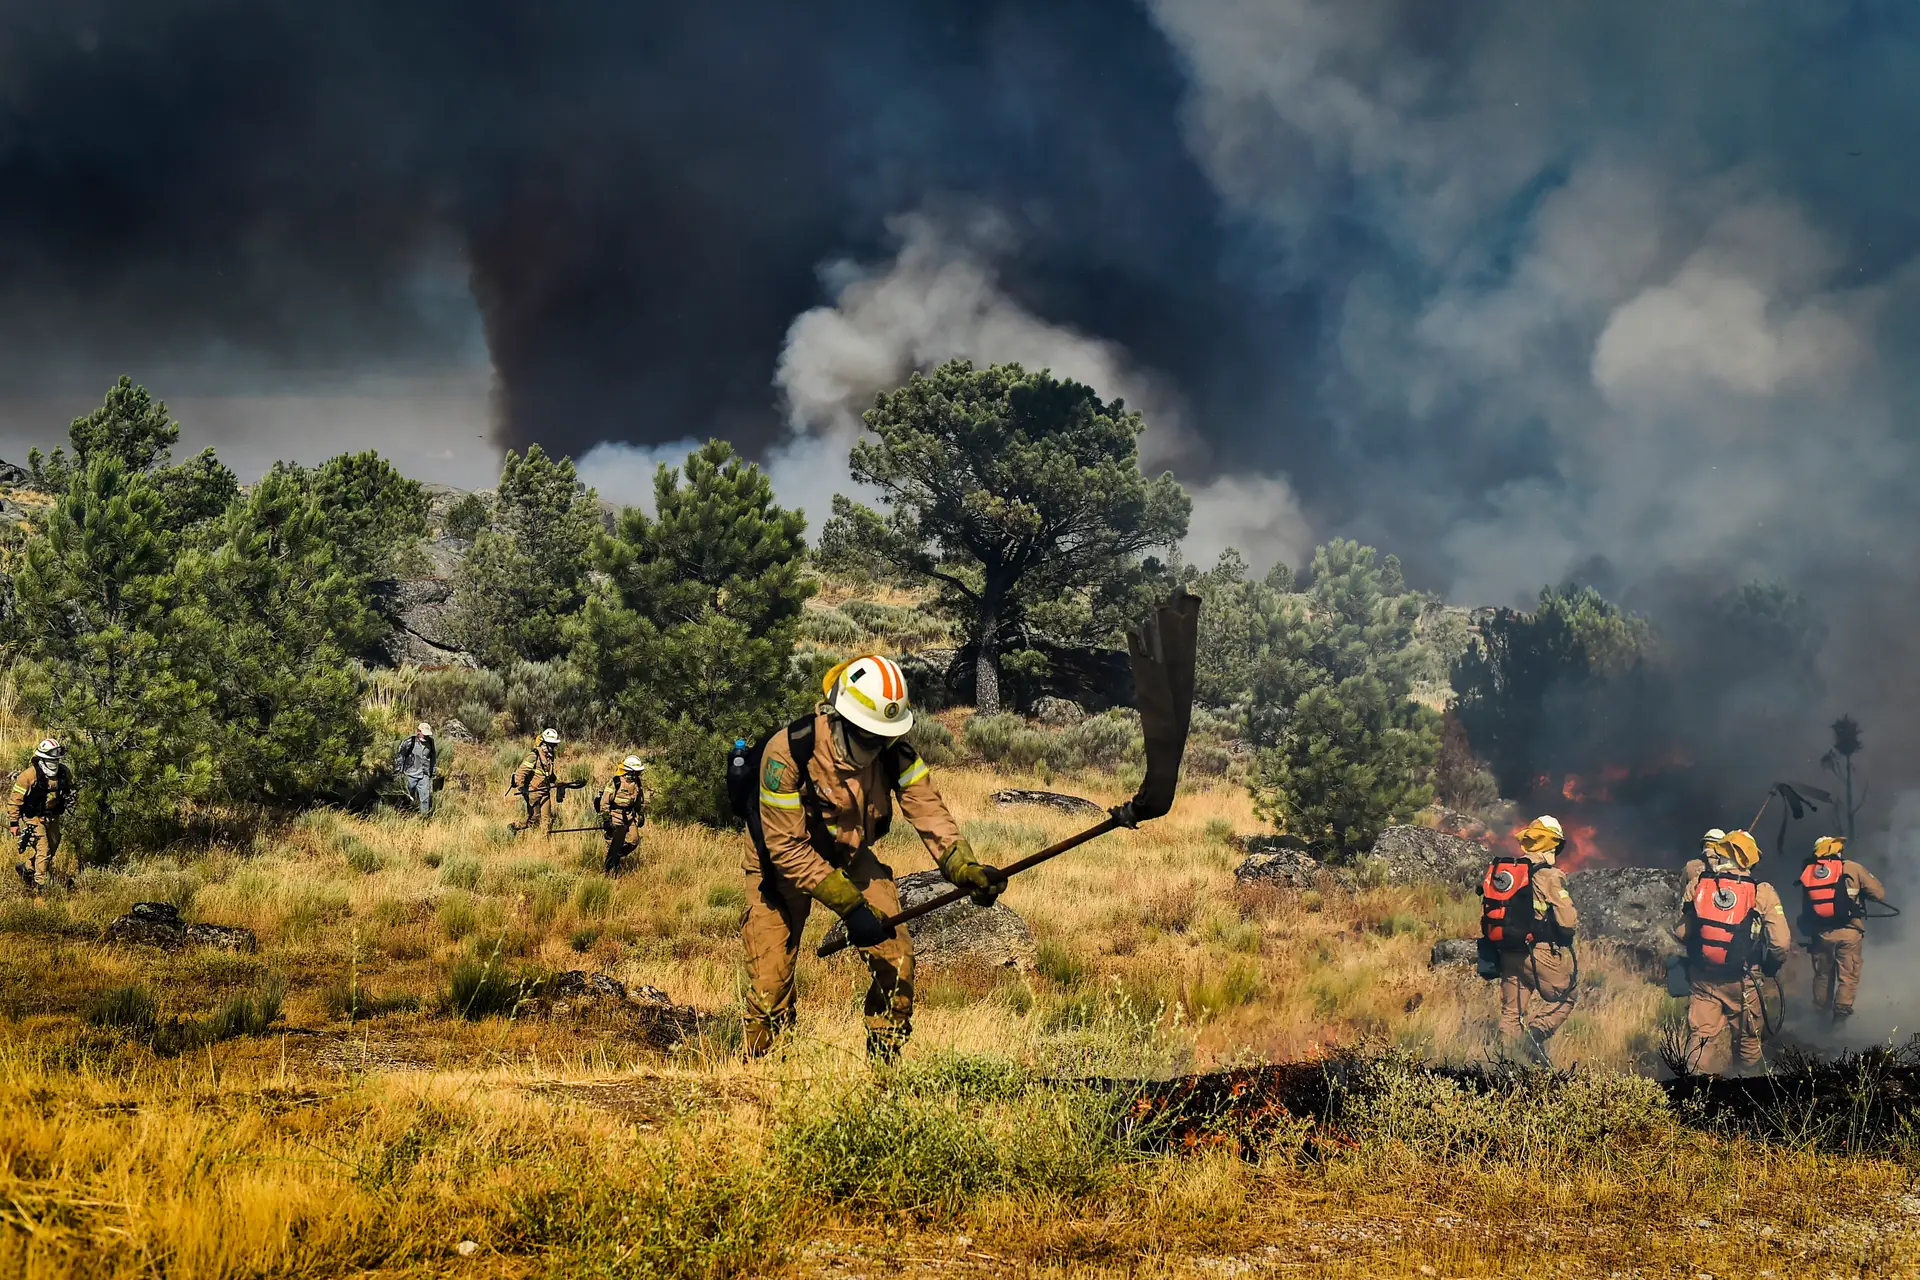 Doze meios aéreos e mais de 1.250 operacionais no combate ao fogo na serra da Estrela